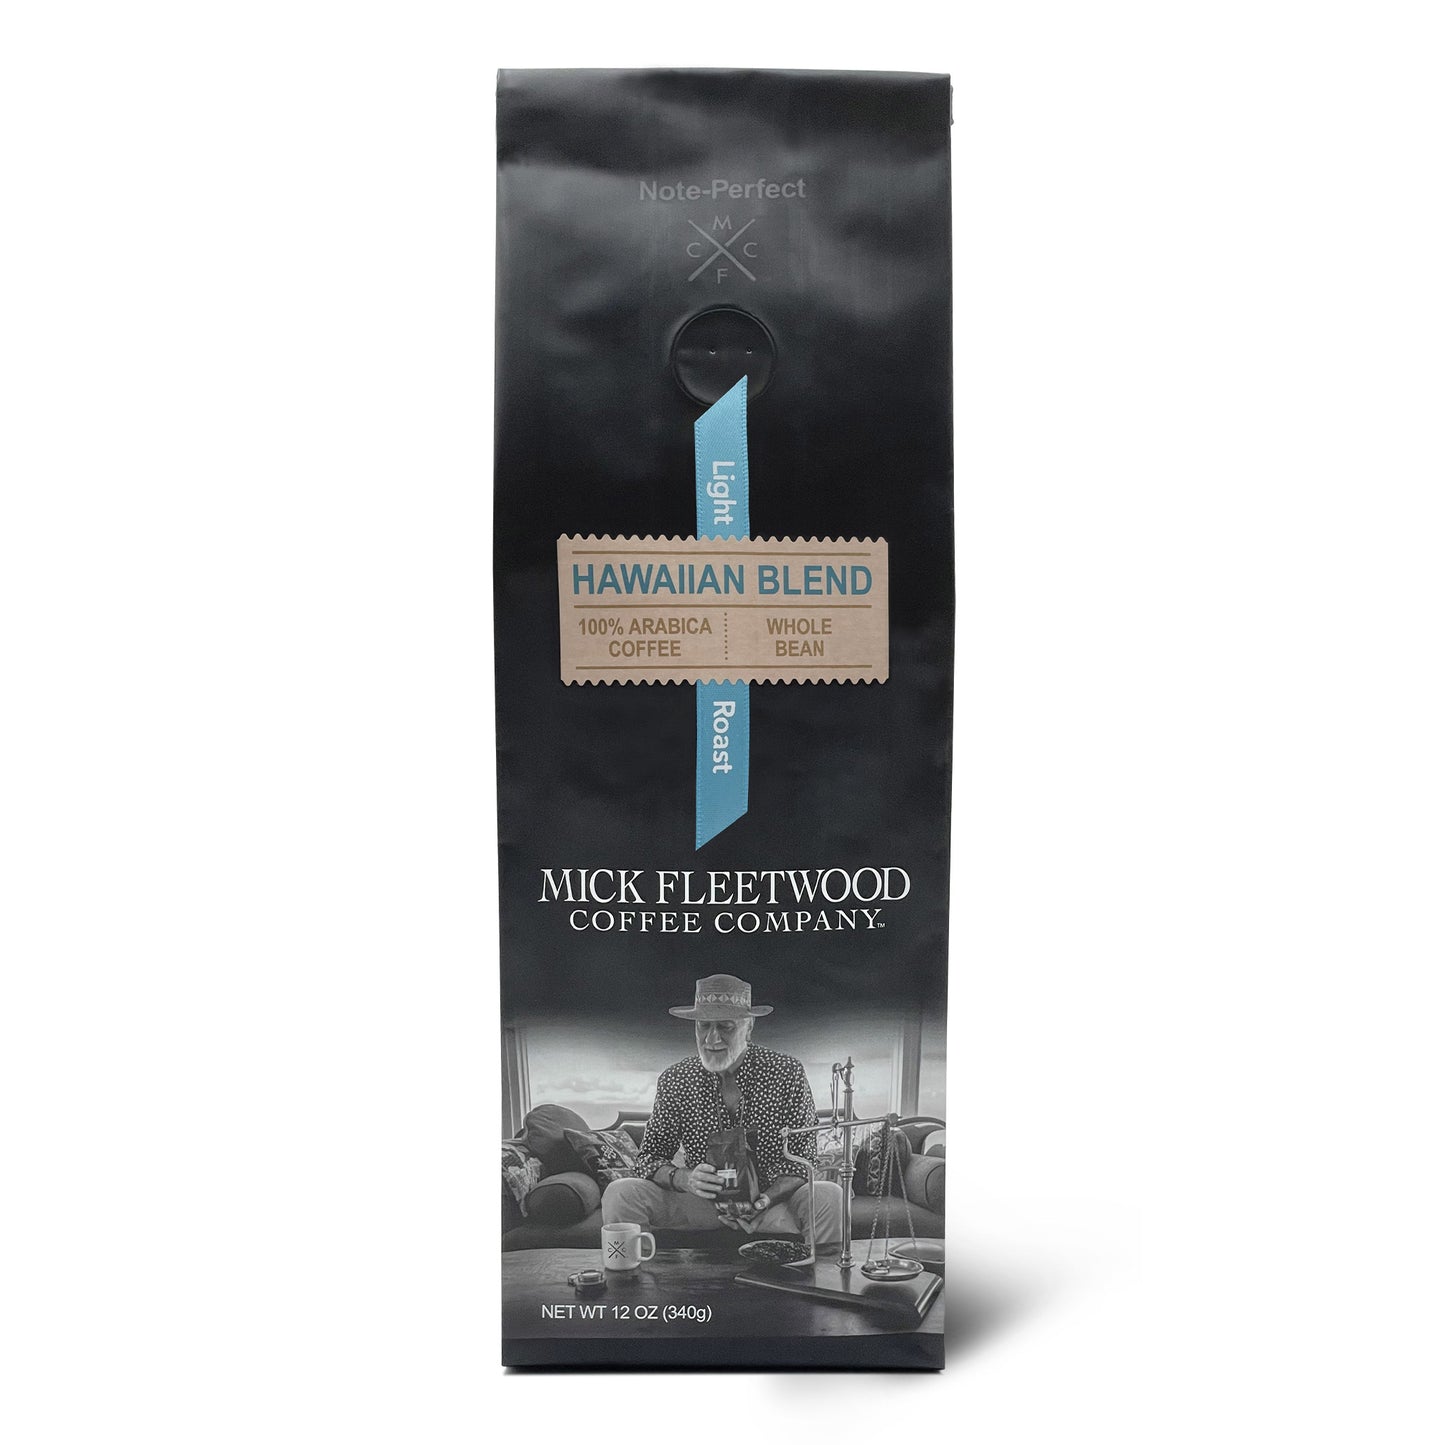 Bag of Mick Fleetwood Coffee Company Hawaiian Blend